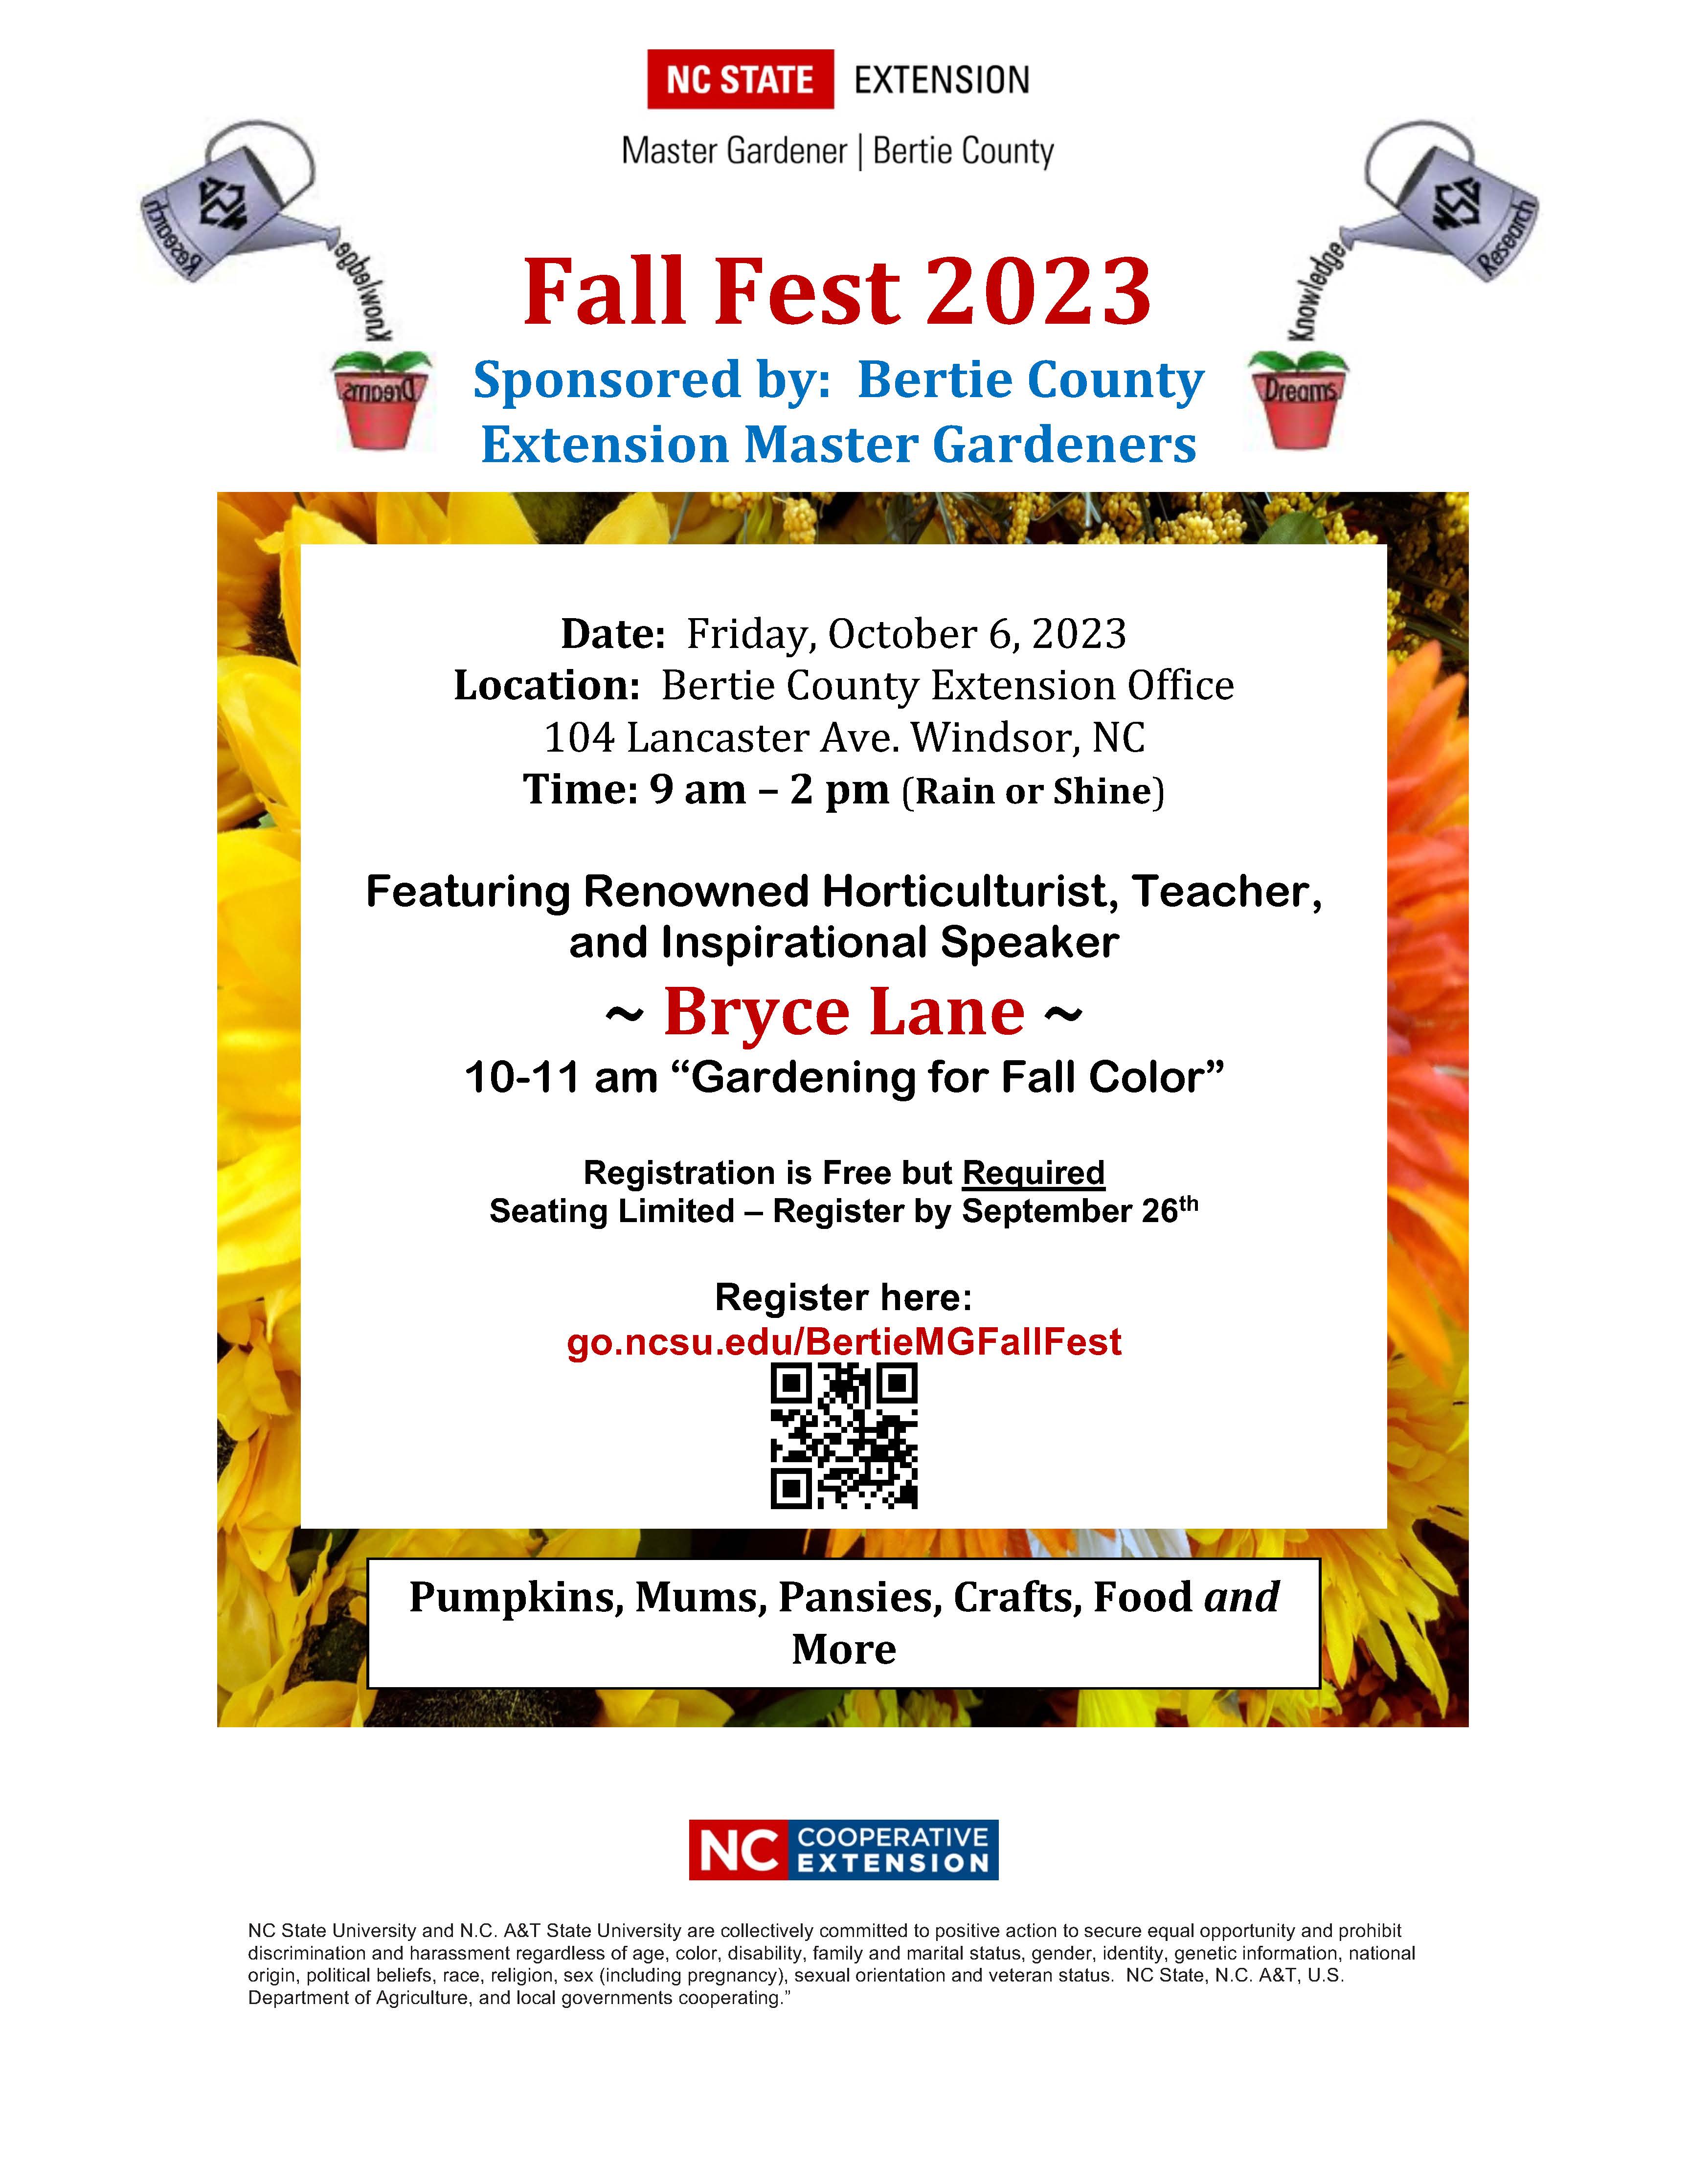  Fall Fest 2023 poster